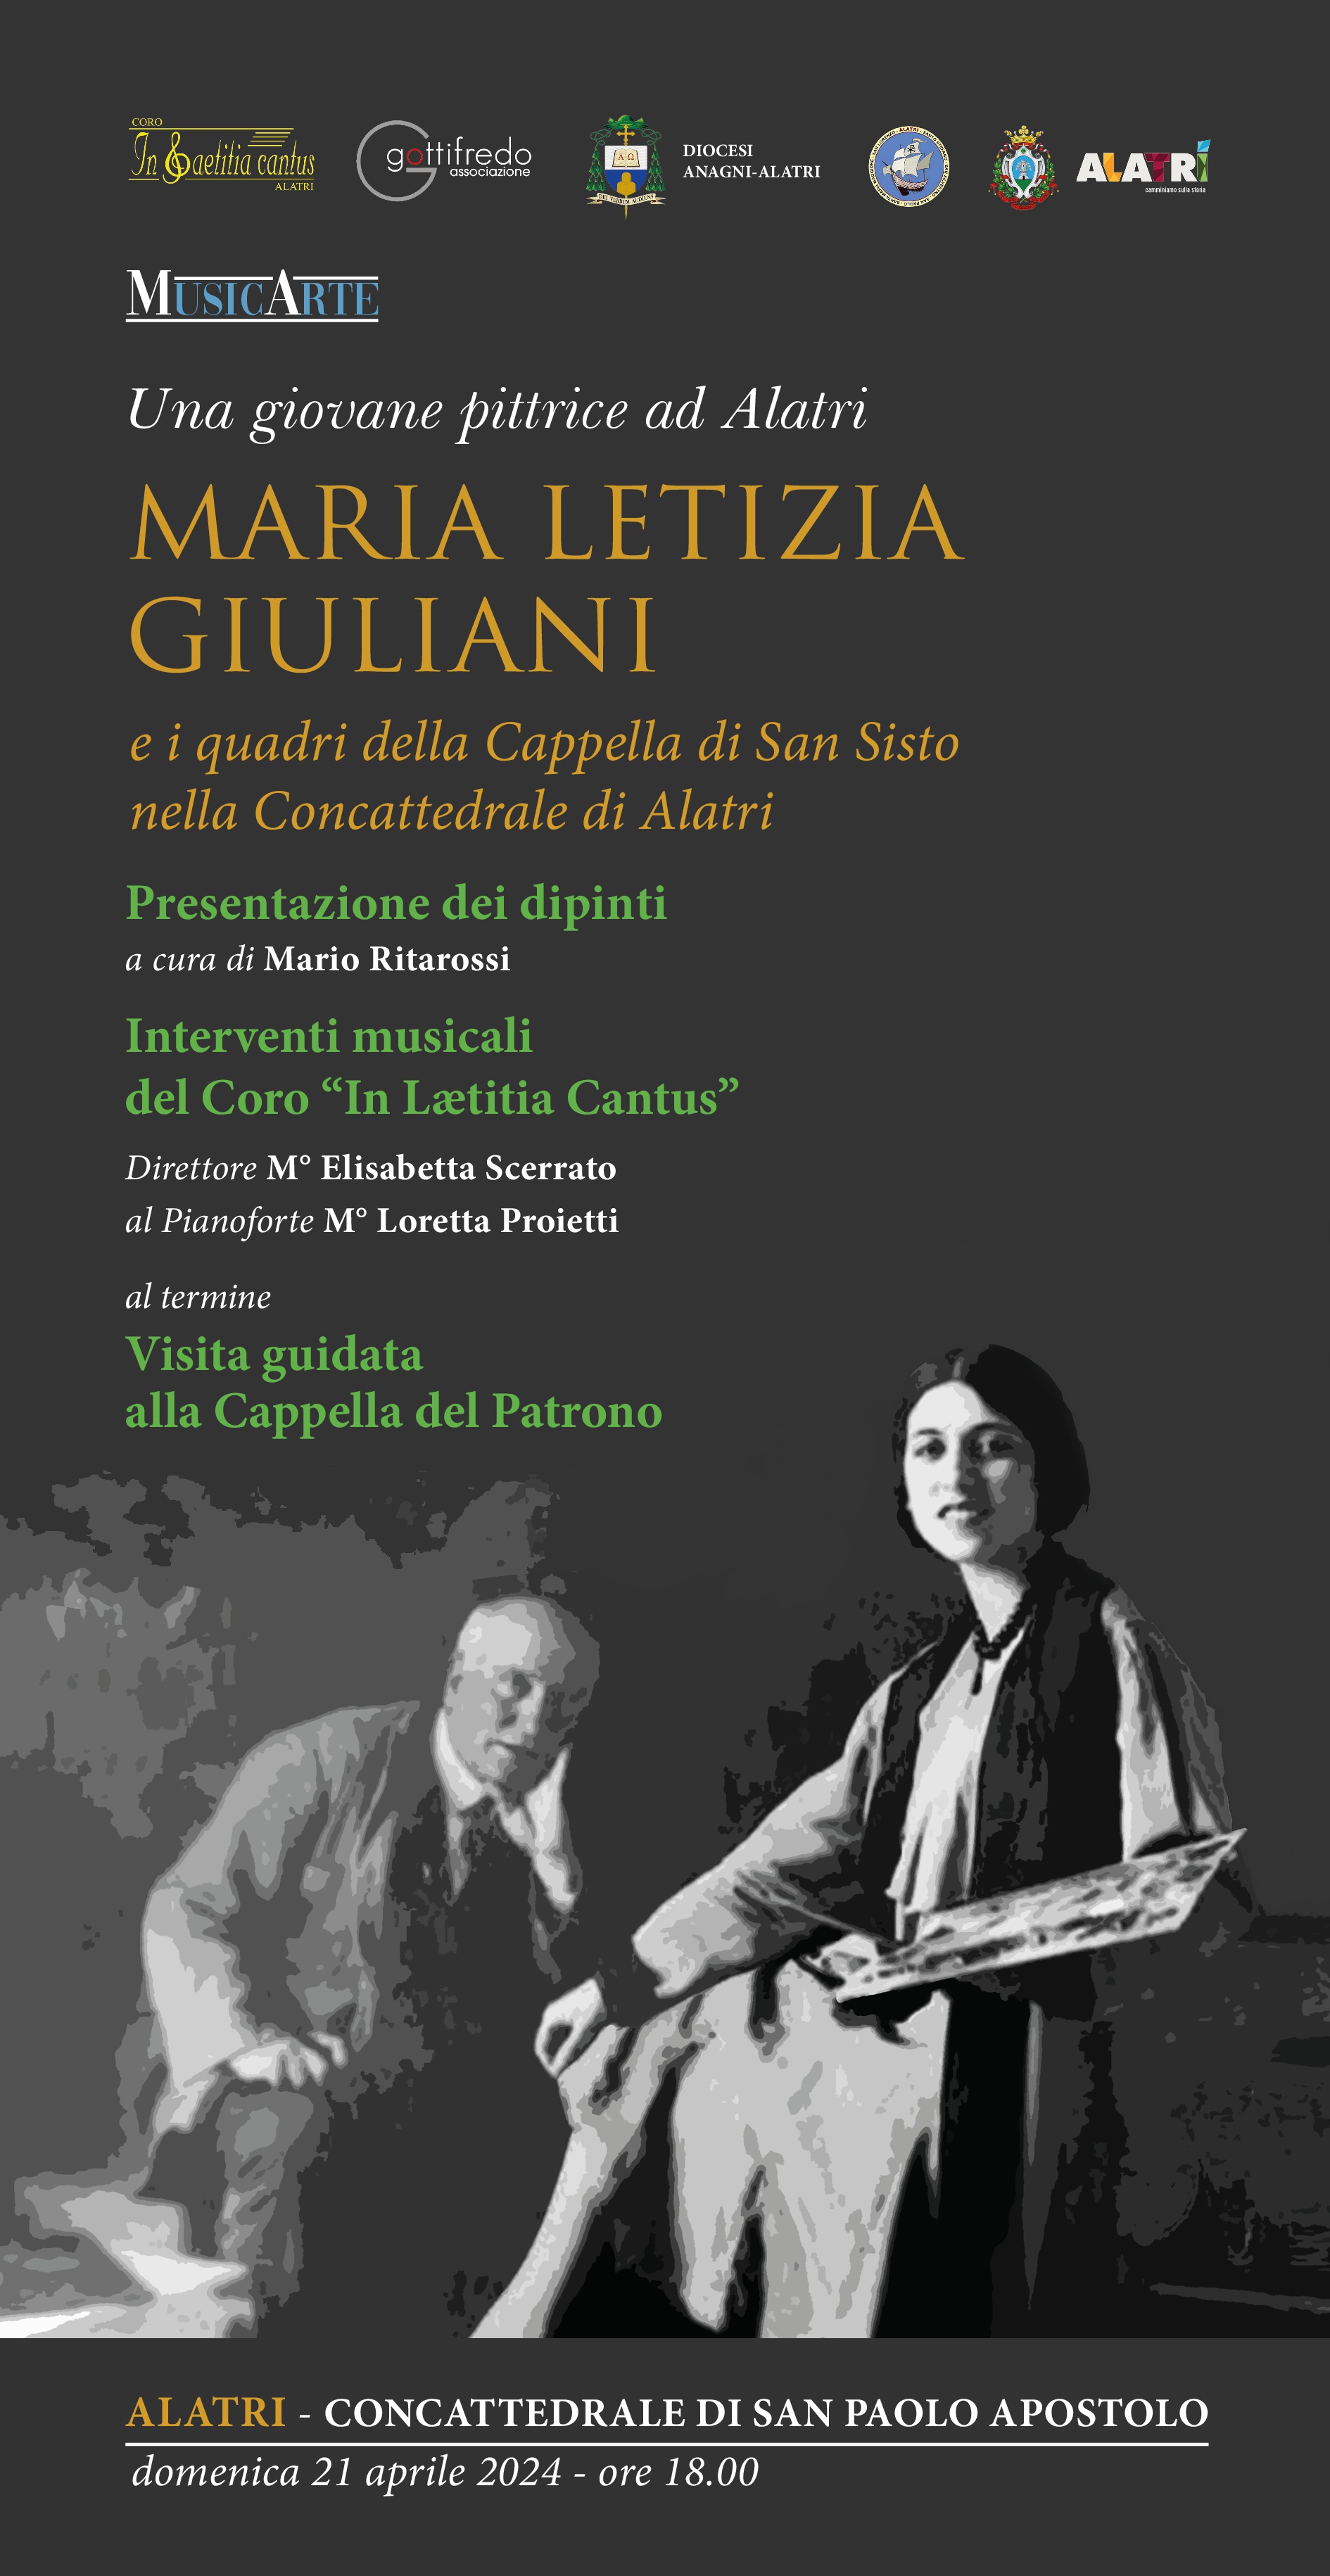 Maria Letizia Giuliani - Una giovane pittrice ad Alatri e i quadri della Cappella di San Sisto